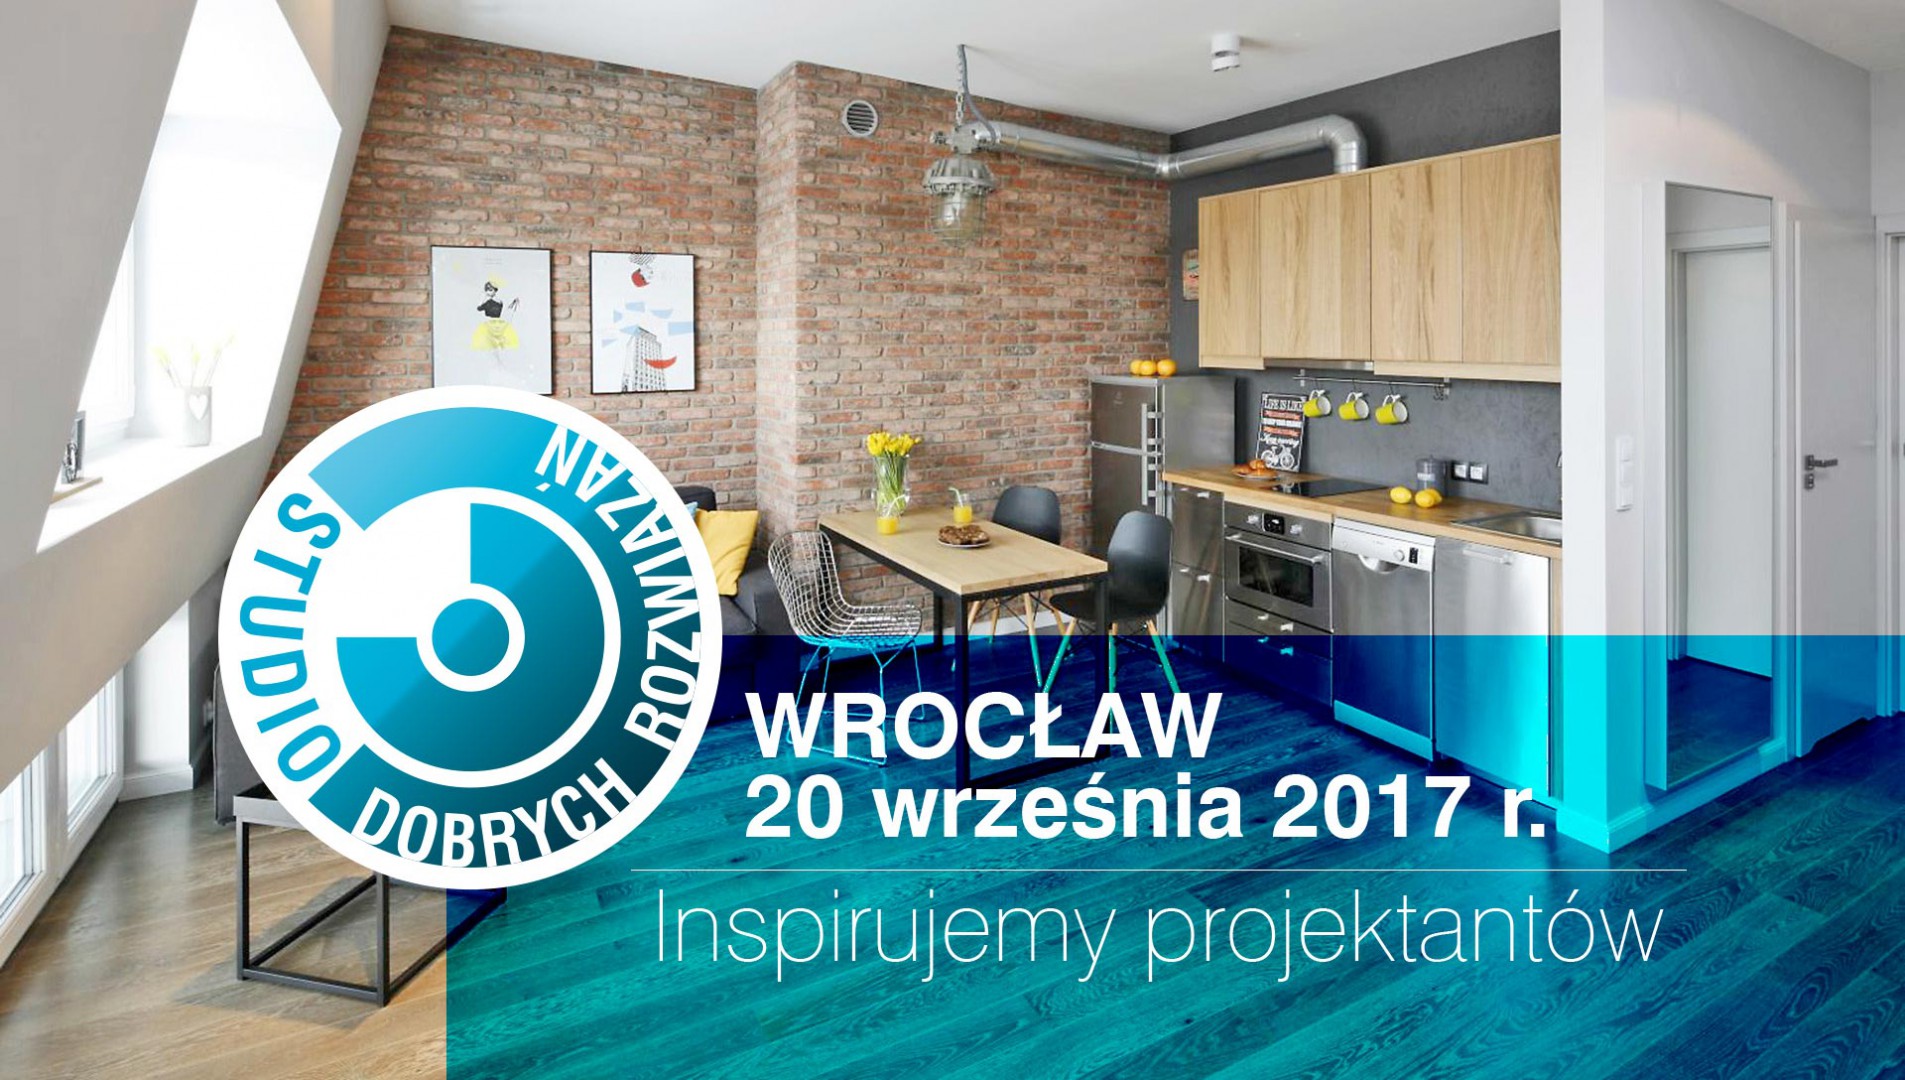 SDR Wrocław 2017